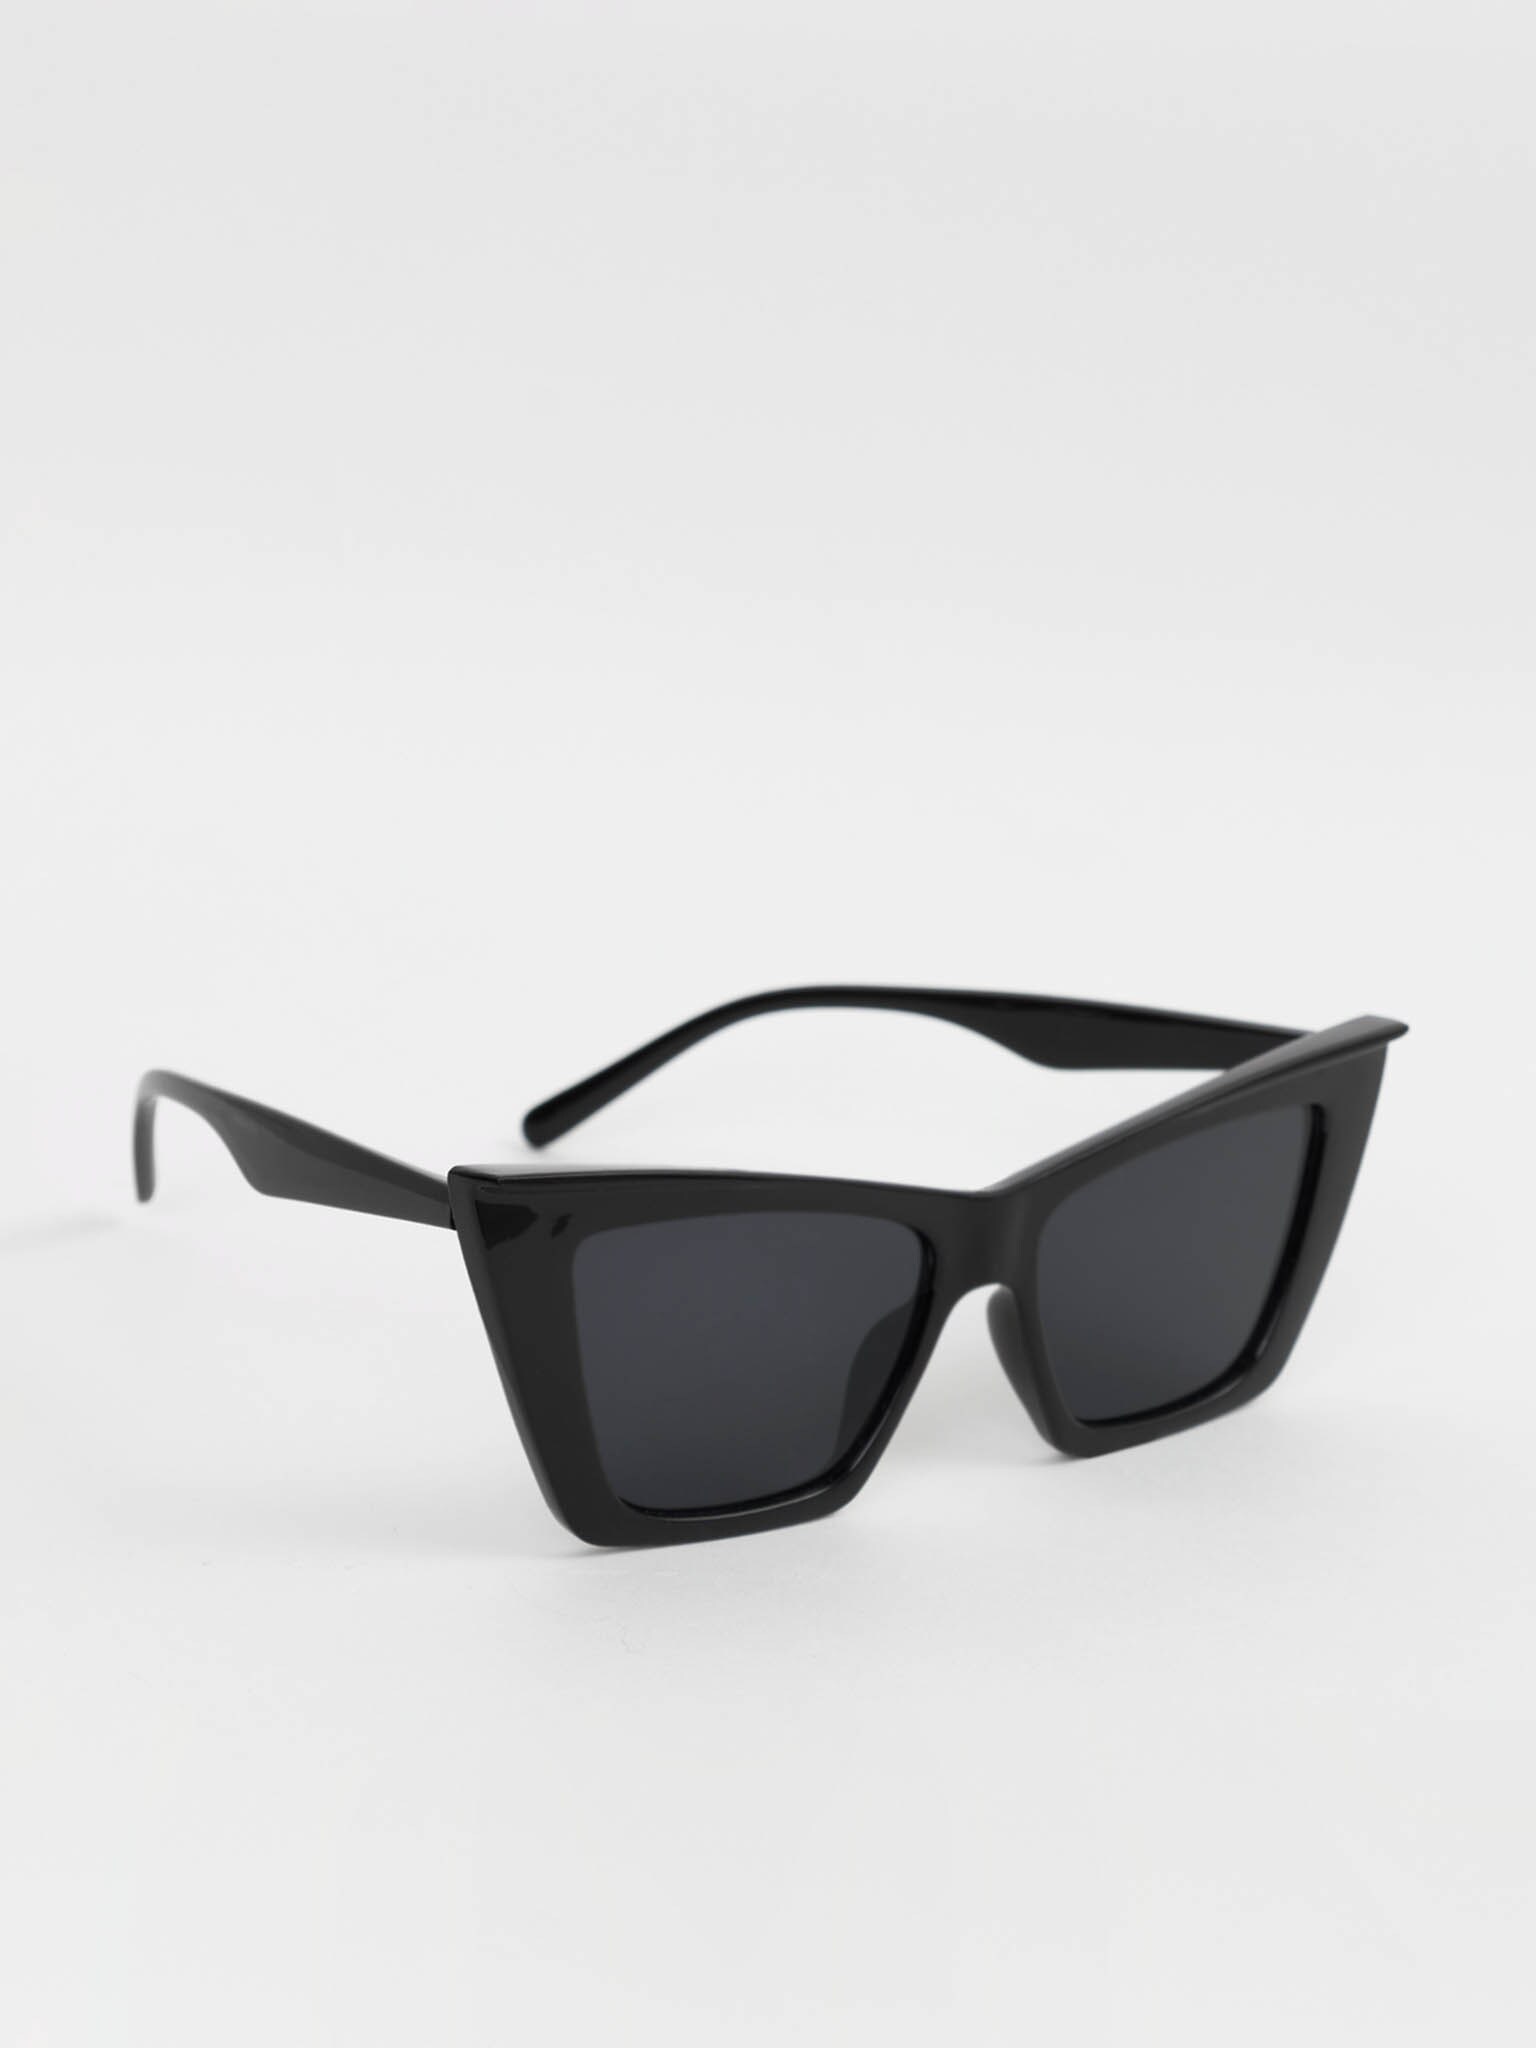 Angular cat-eye sunglasses